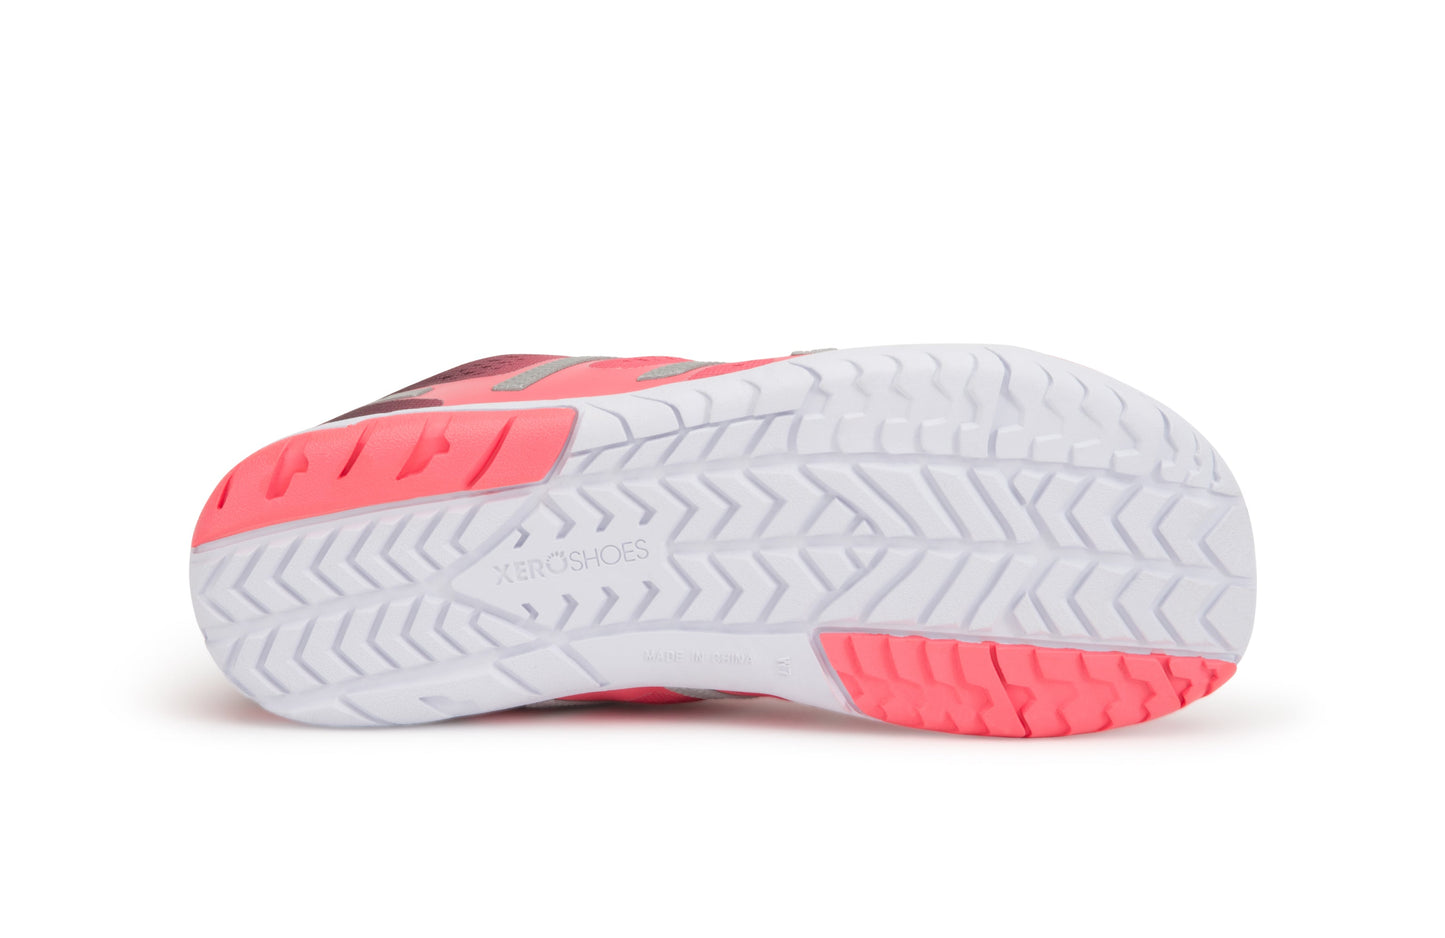 Xero Shoes HFS Womens barfods træningssko/løbesko til kvinder i farven coral hush, saal